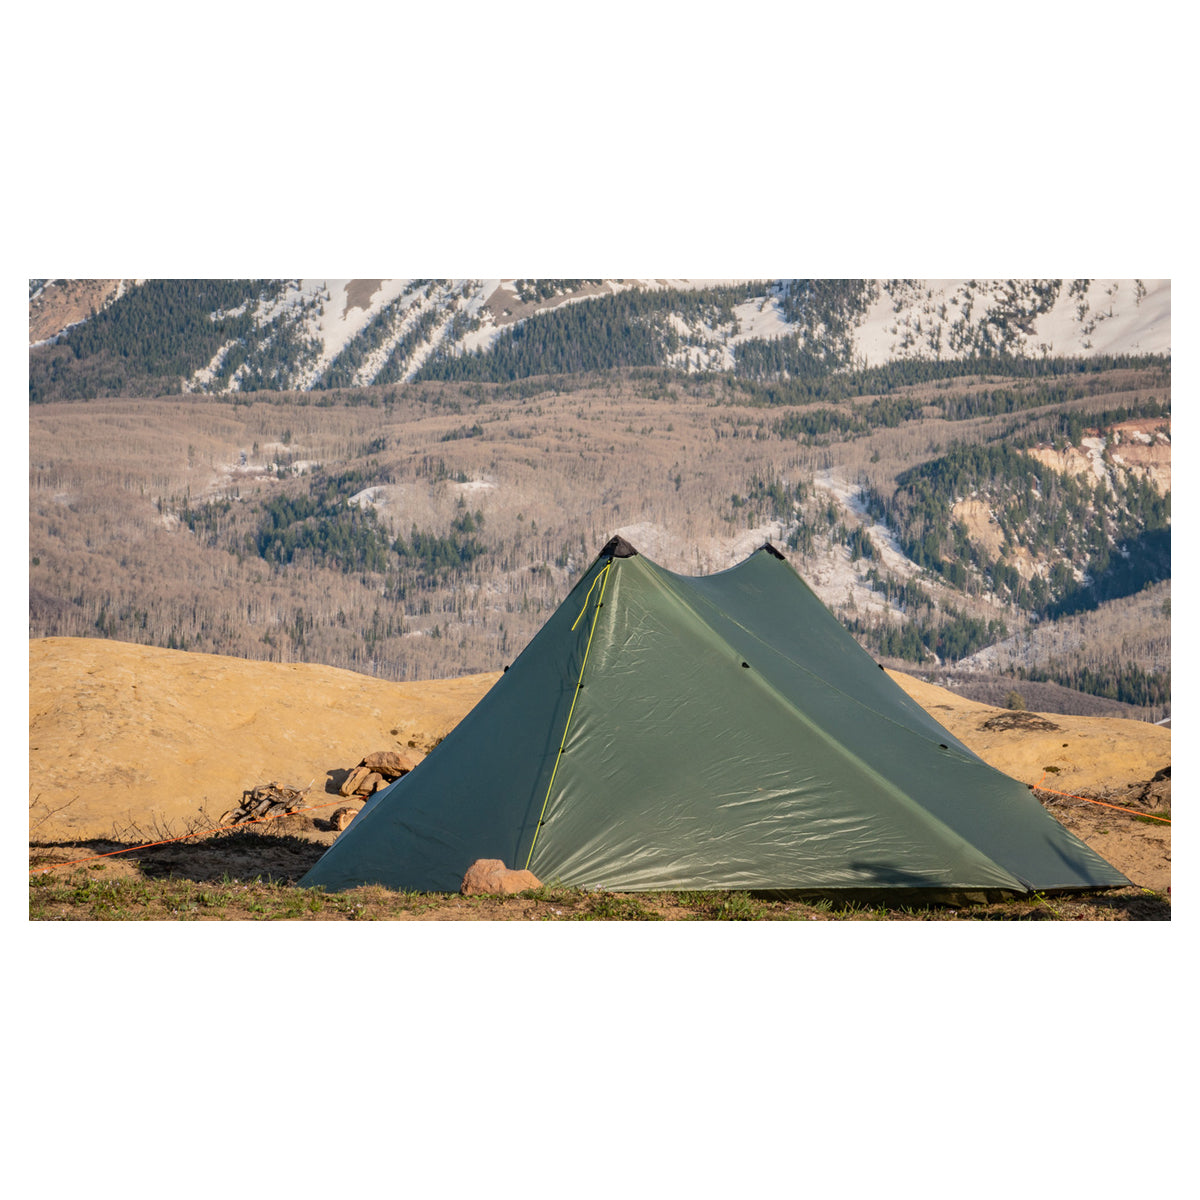 Seek Outside Sunlight 2 Person Tent in  by GOHUNT | Seek Outside - GOHUNT Shop